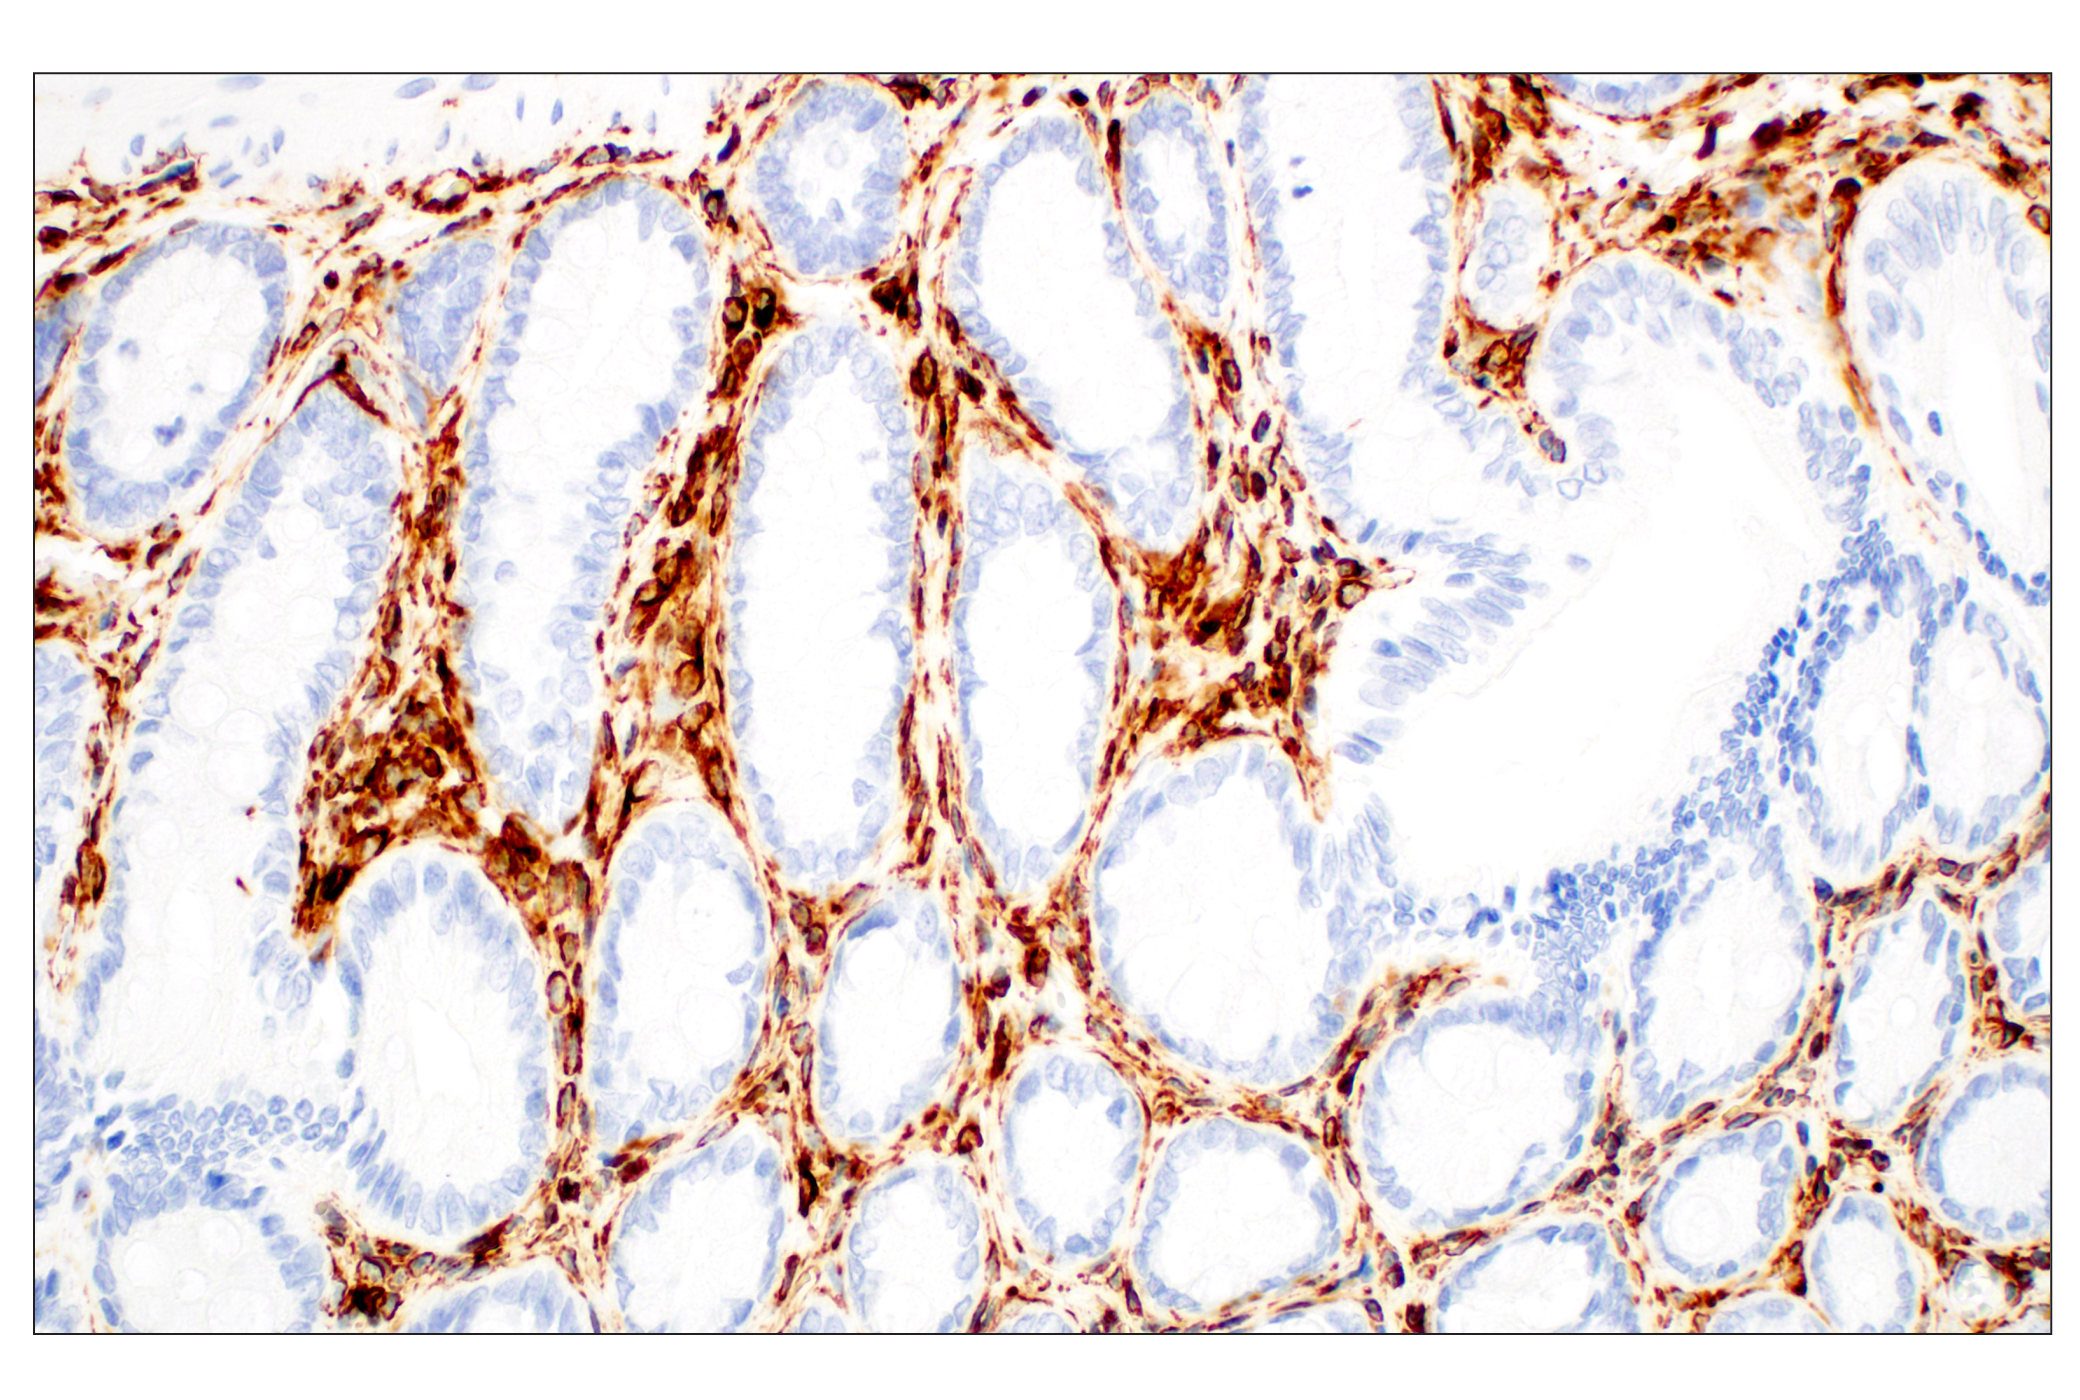  Image 38: Cell Fractionation Antibody Sampler Kit